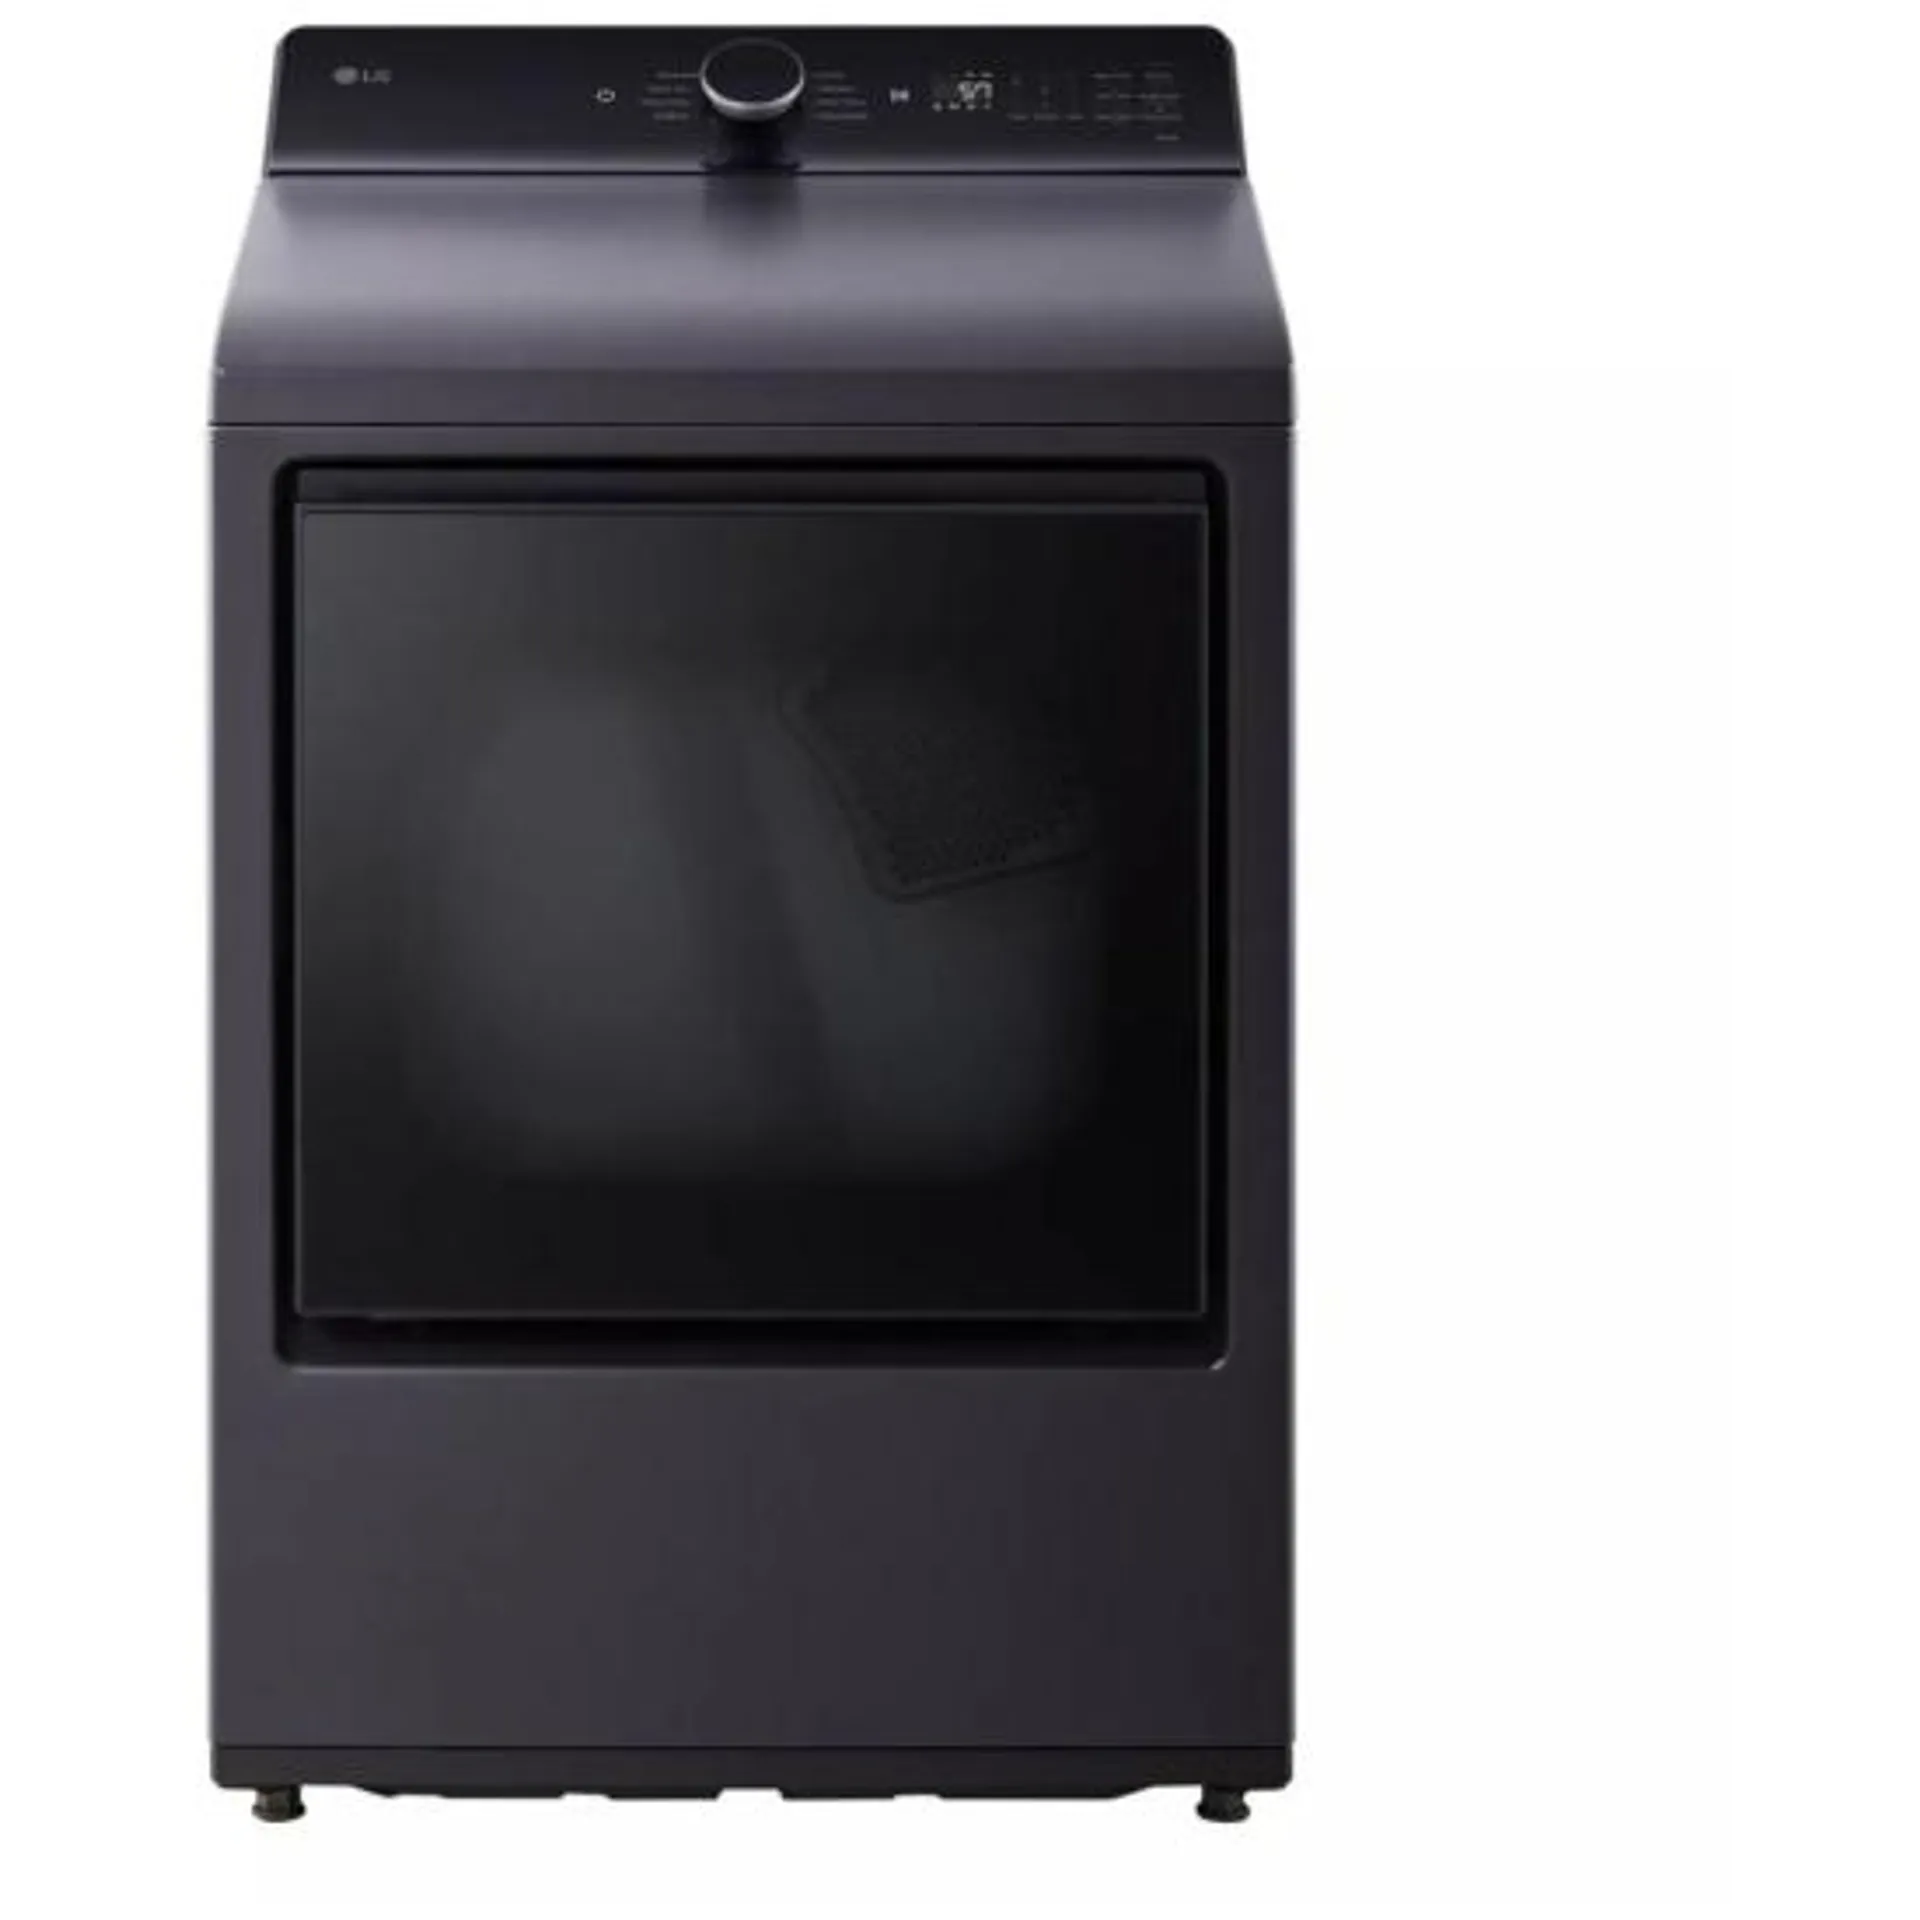 LG DLE8400BE Dryer, Matt Black colour